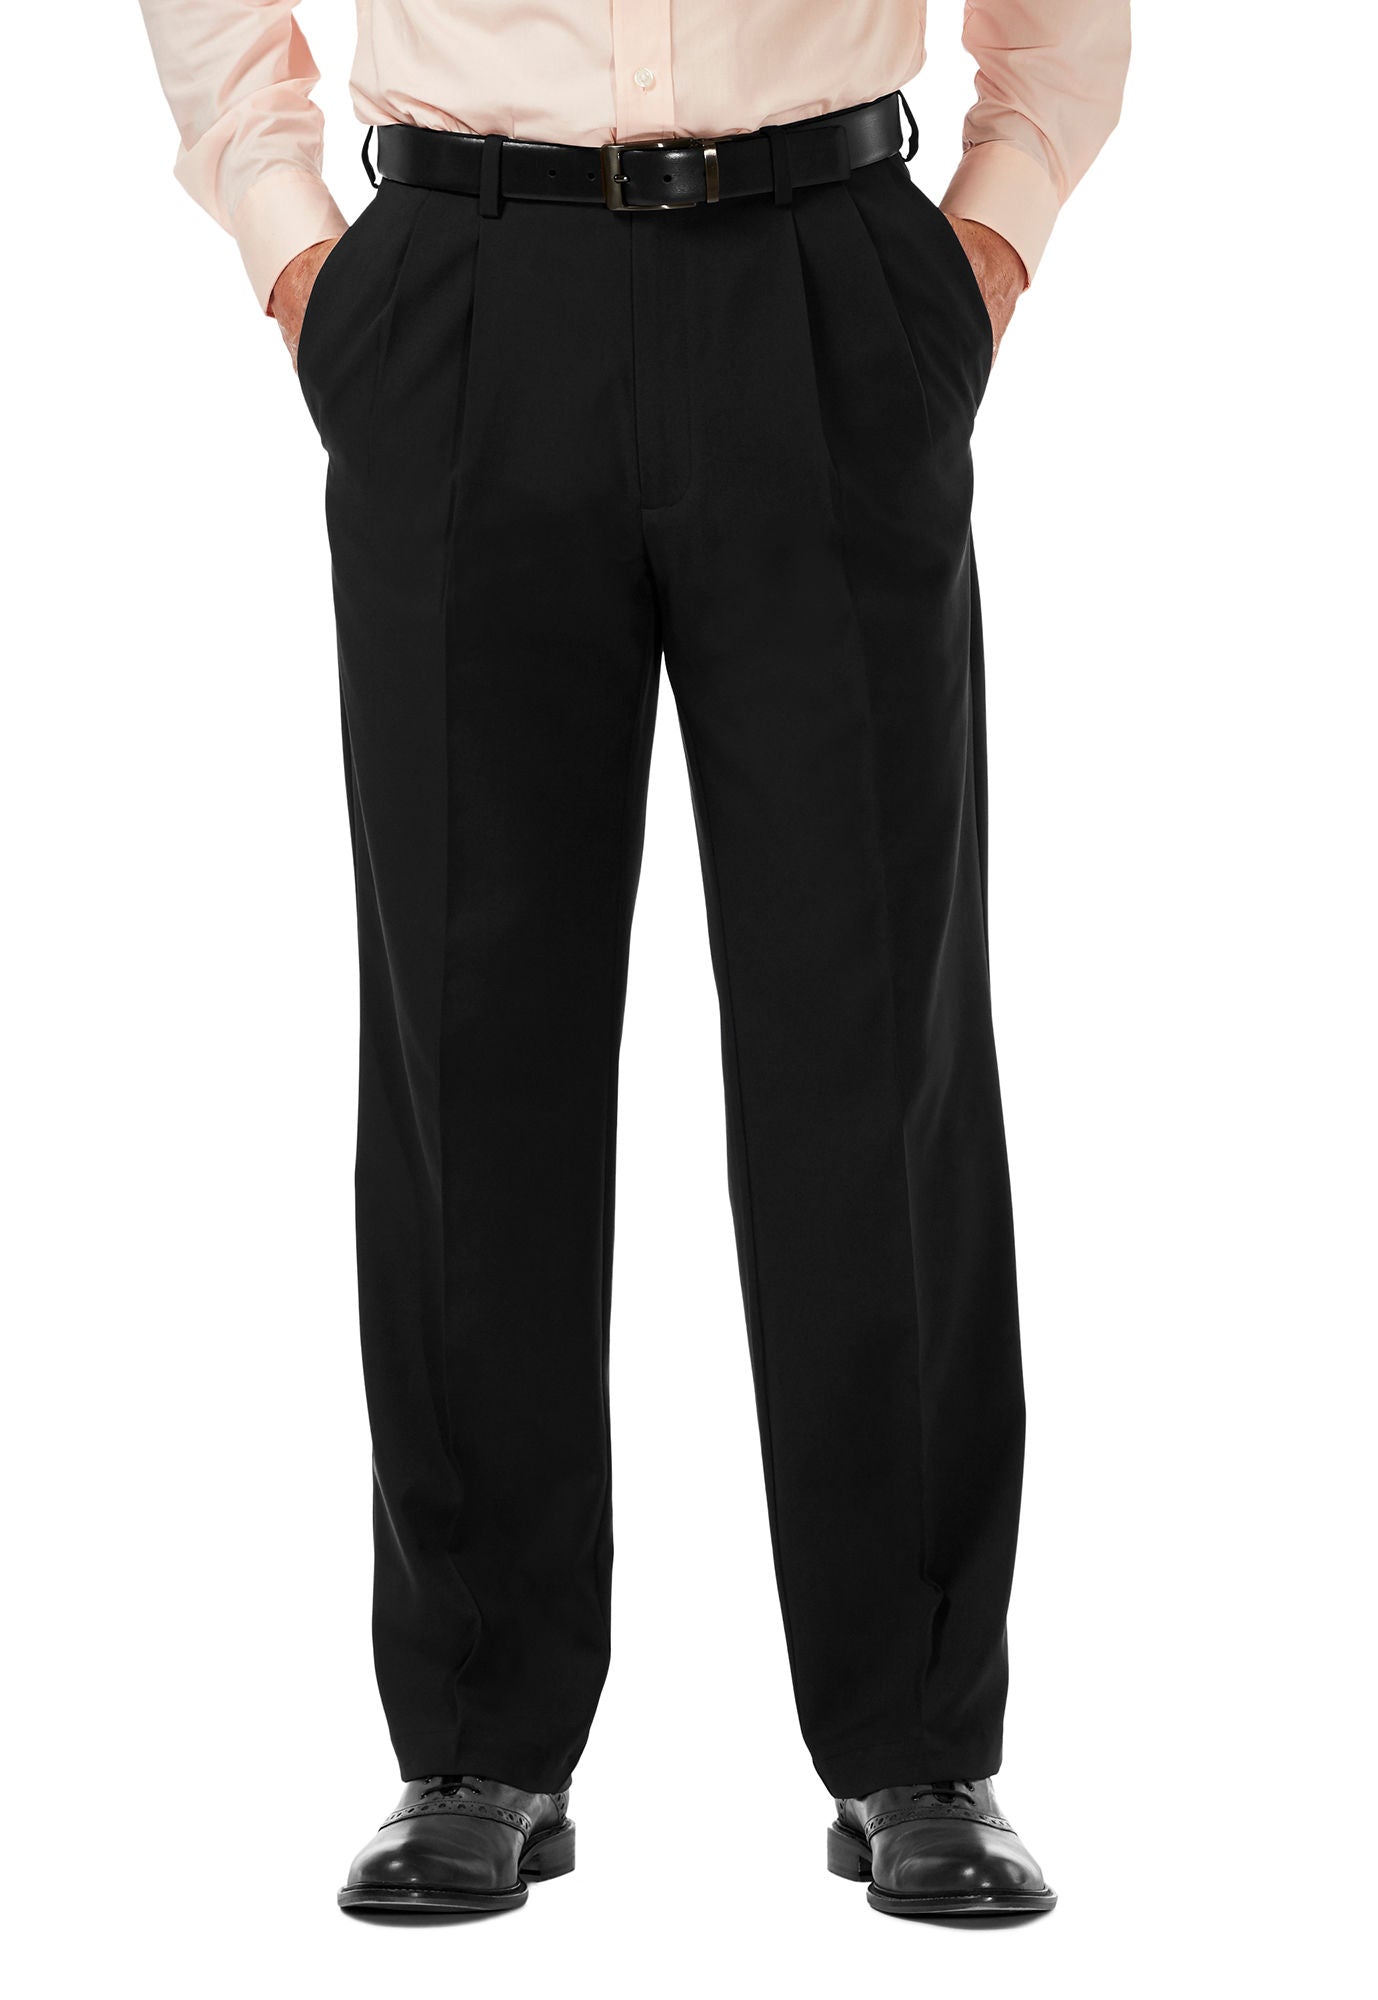 Men039s Naples Suit Pants High Waist Adjustable Grey Vintage Casual  Light Trousers  eBay